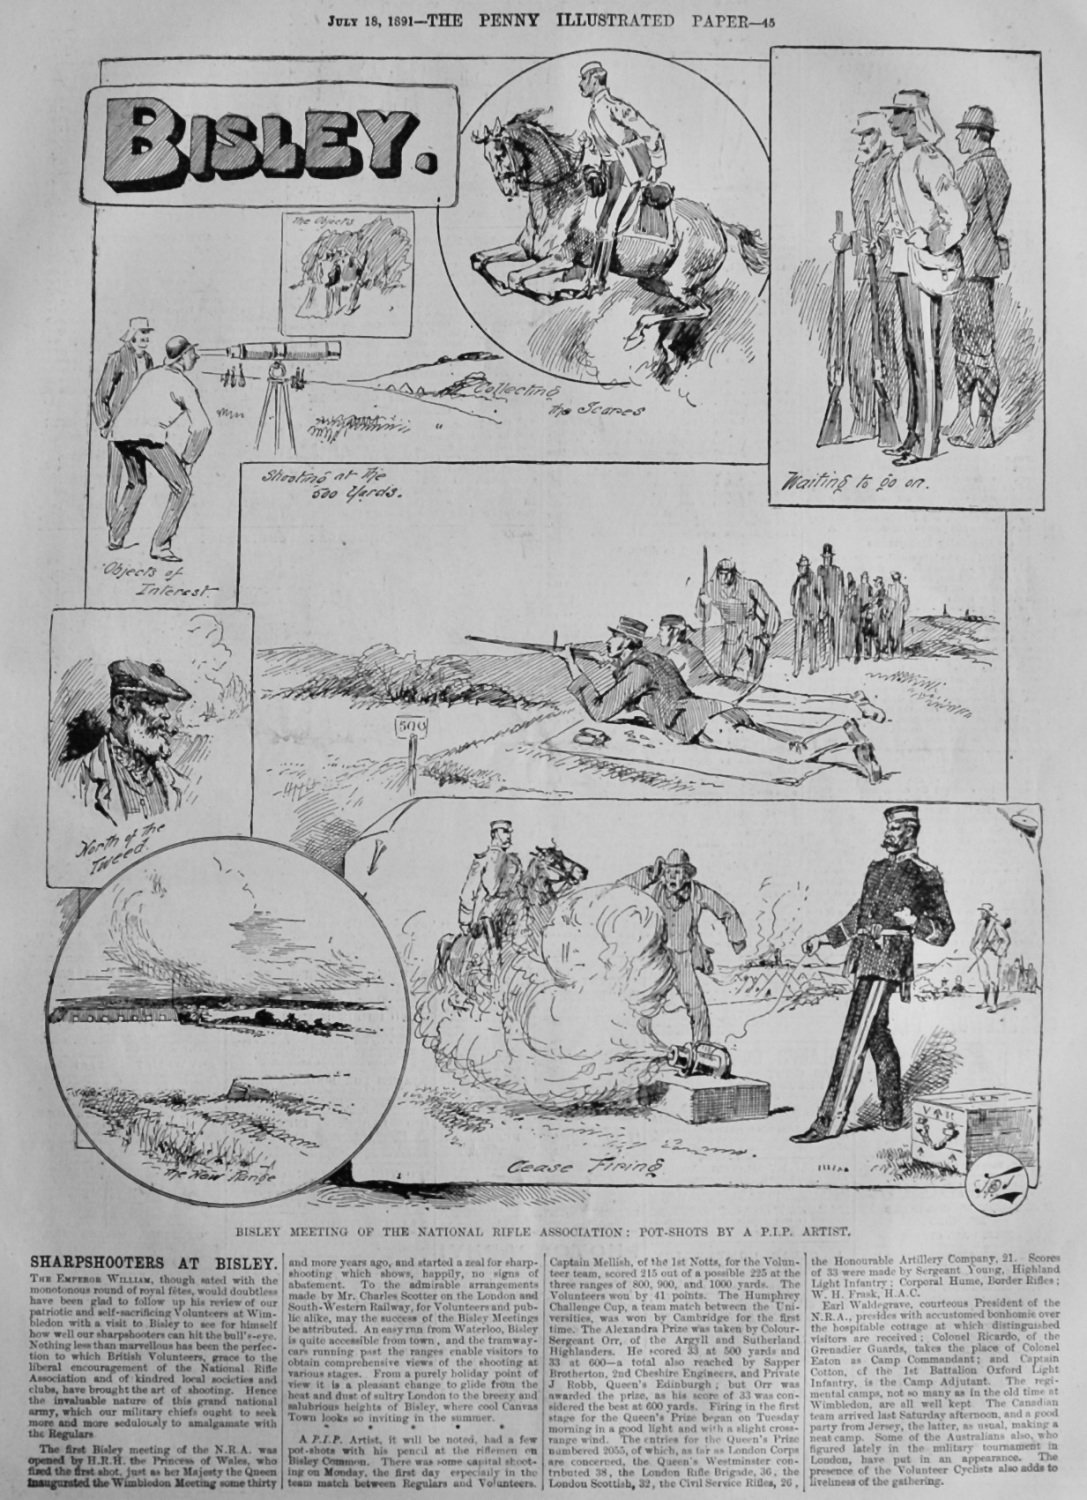 Sharpshooters at Bisley.  1891.